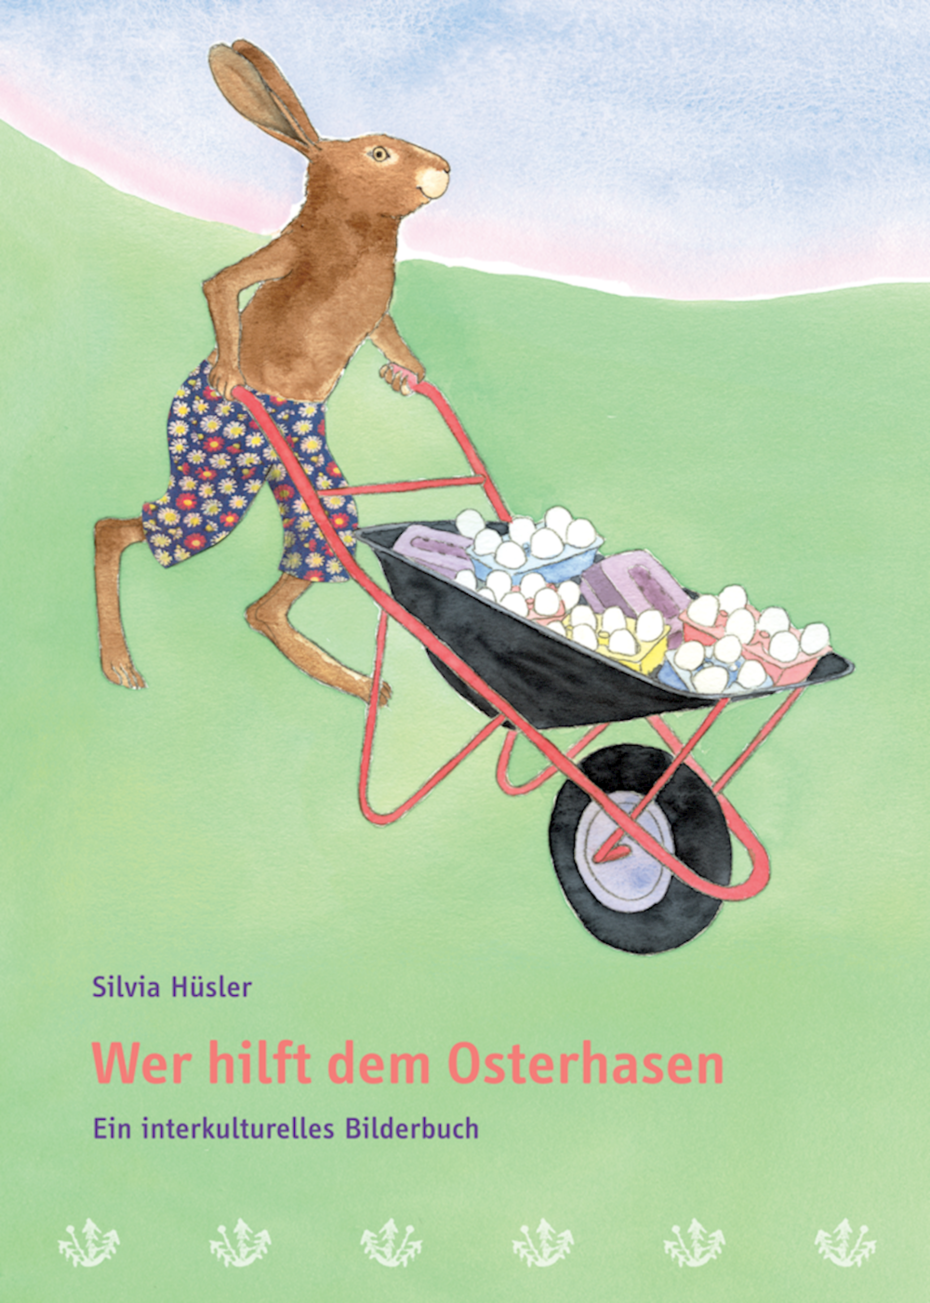 «Wer hilft dem Osterhasen», ein interkulturelles Bilderbuch von Silvia Hüsler, © 2009 Lehrmittelverlag Zürich.